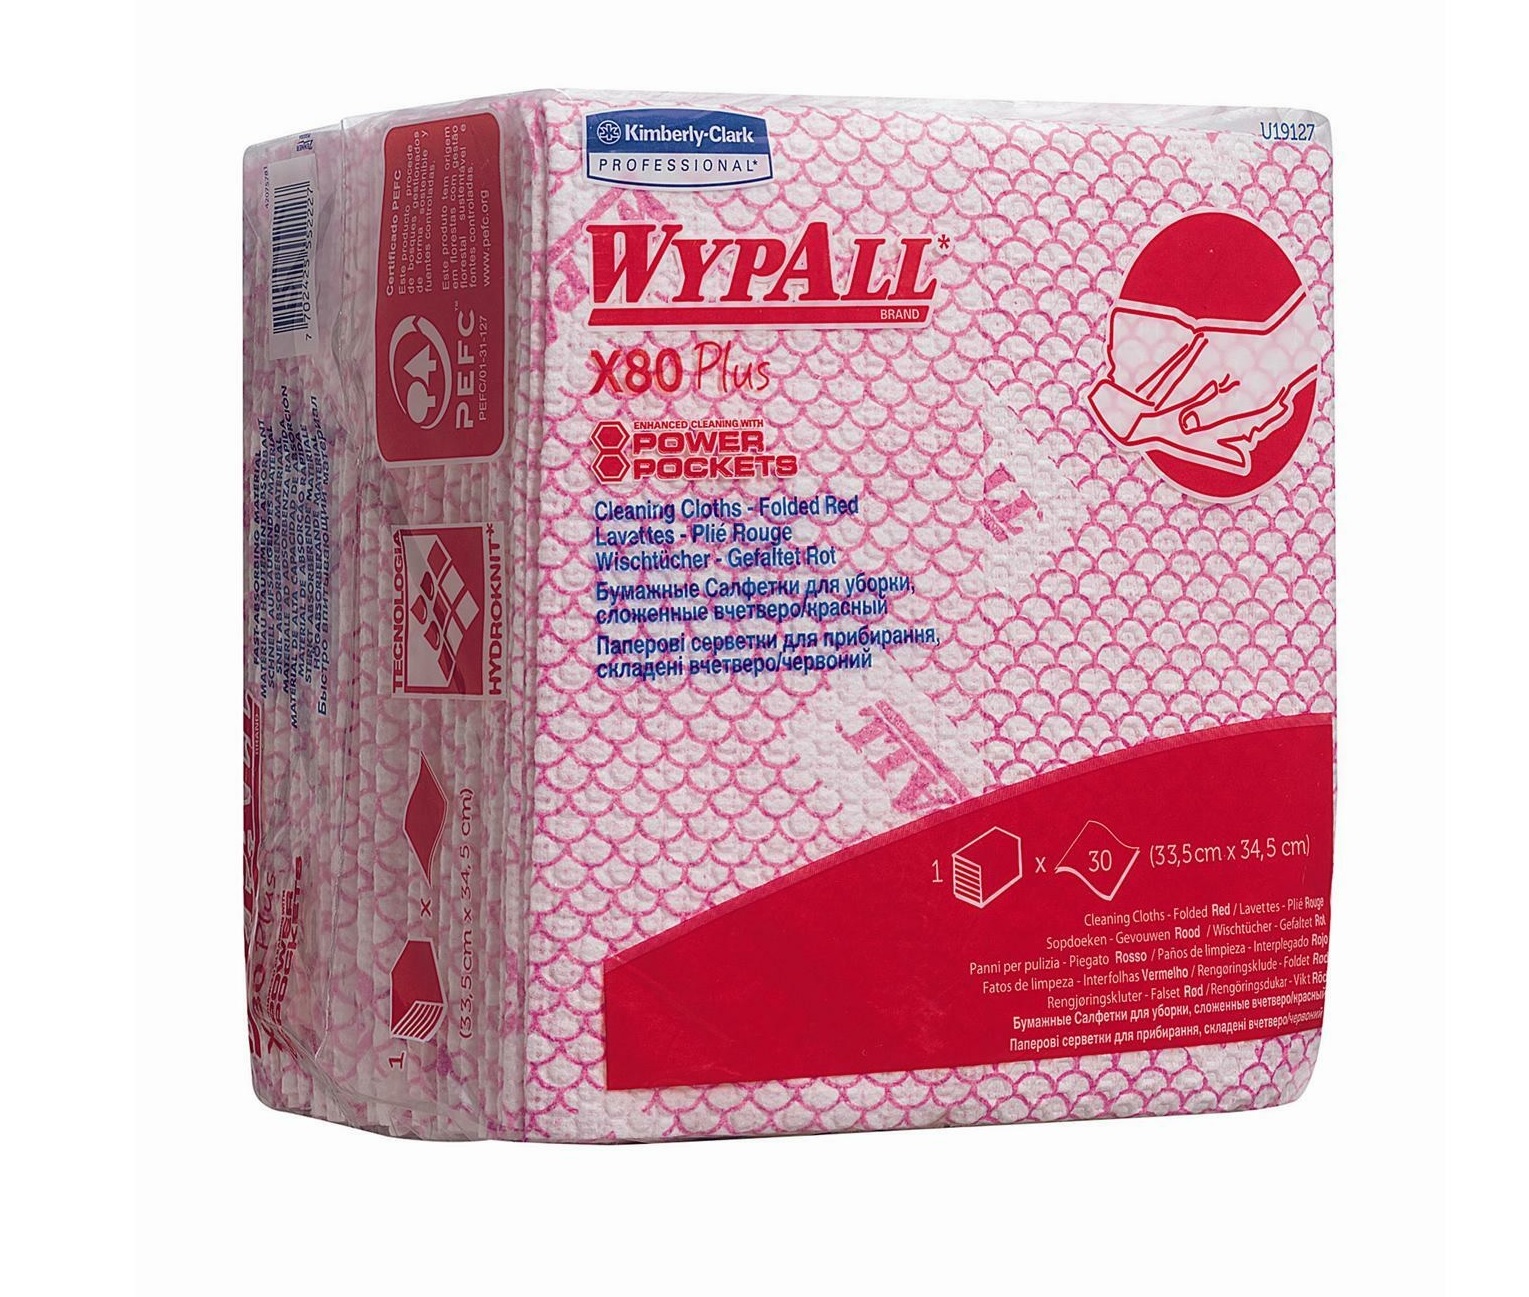  Kimberly Clark WypAll® X80 Plus Poetsdoeken- 8 polybags x 30 1/4 gevouwen, rode doeken